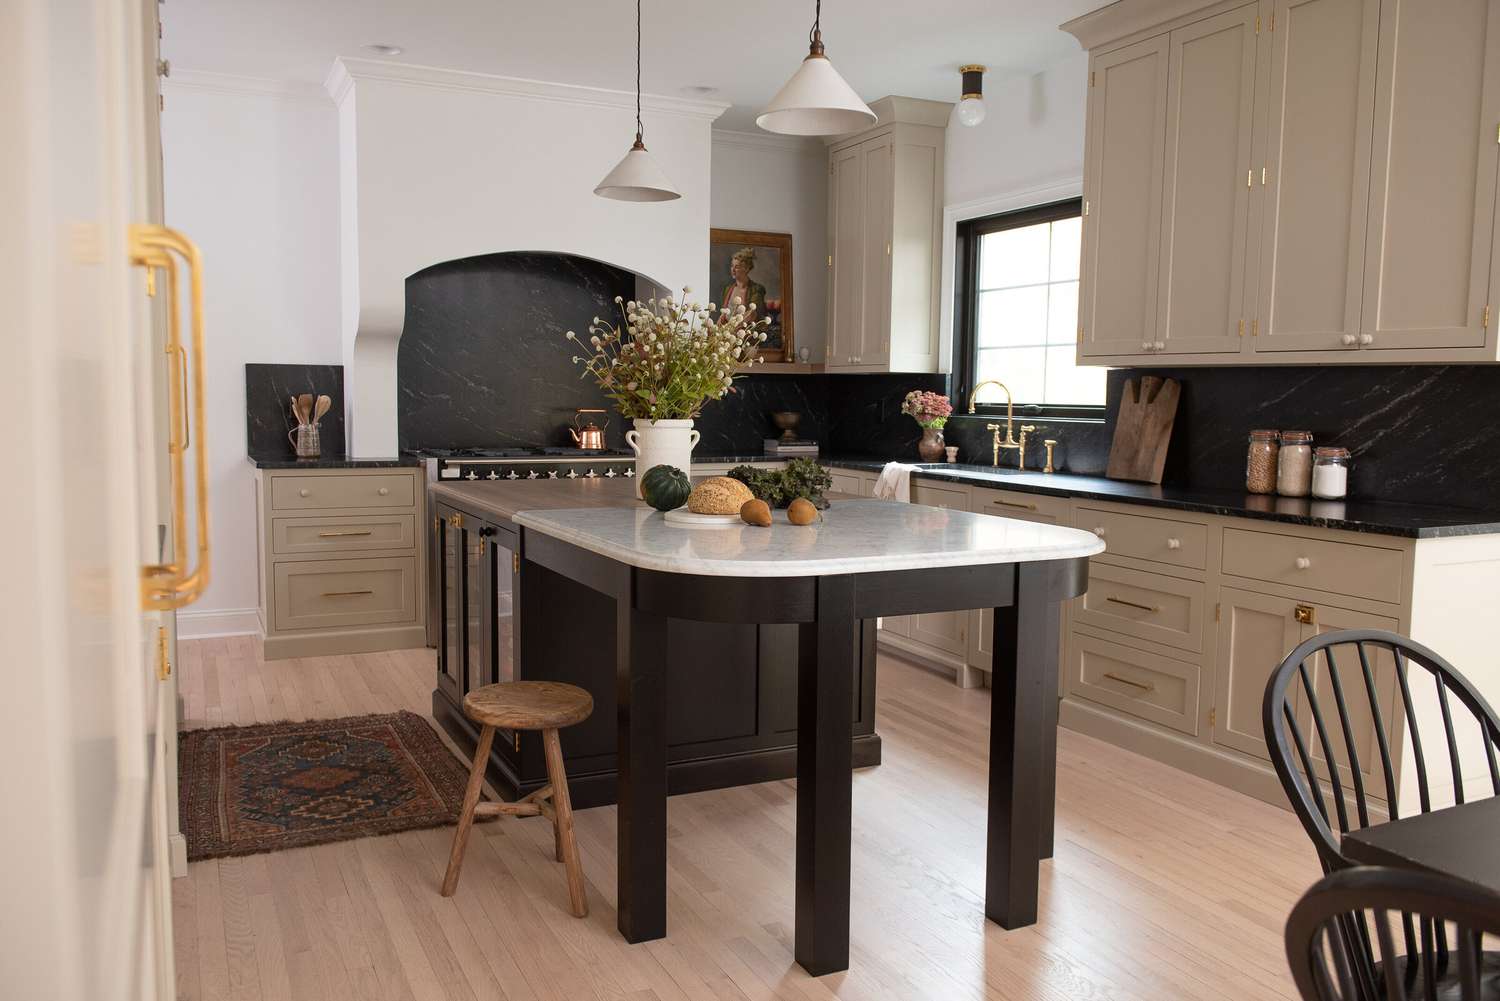 Eine Küche im europäischen Stil mit einer großen Insel und beigen Schränken mit einer schwarzen Marmorplatte als Aufkantung.